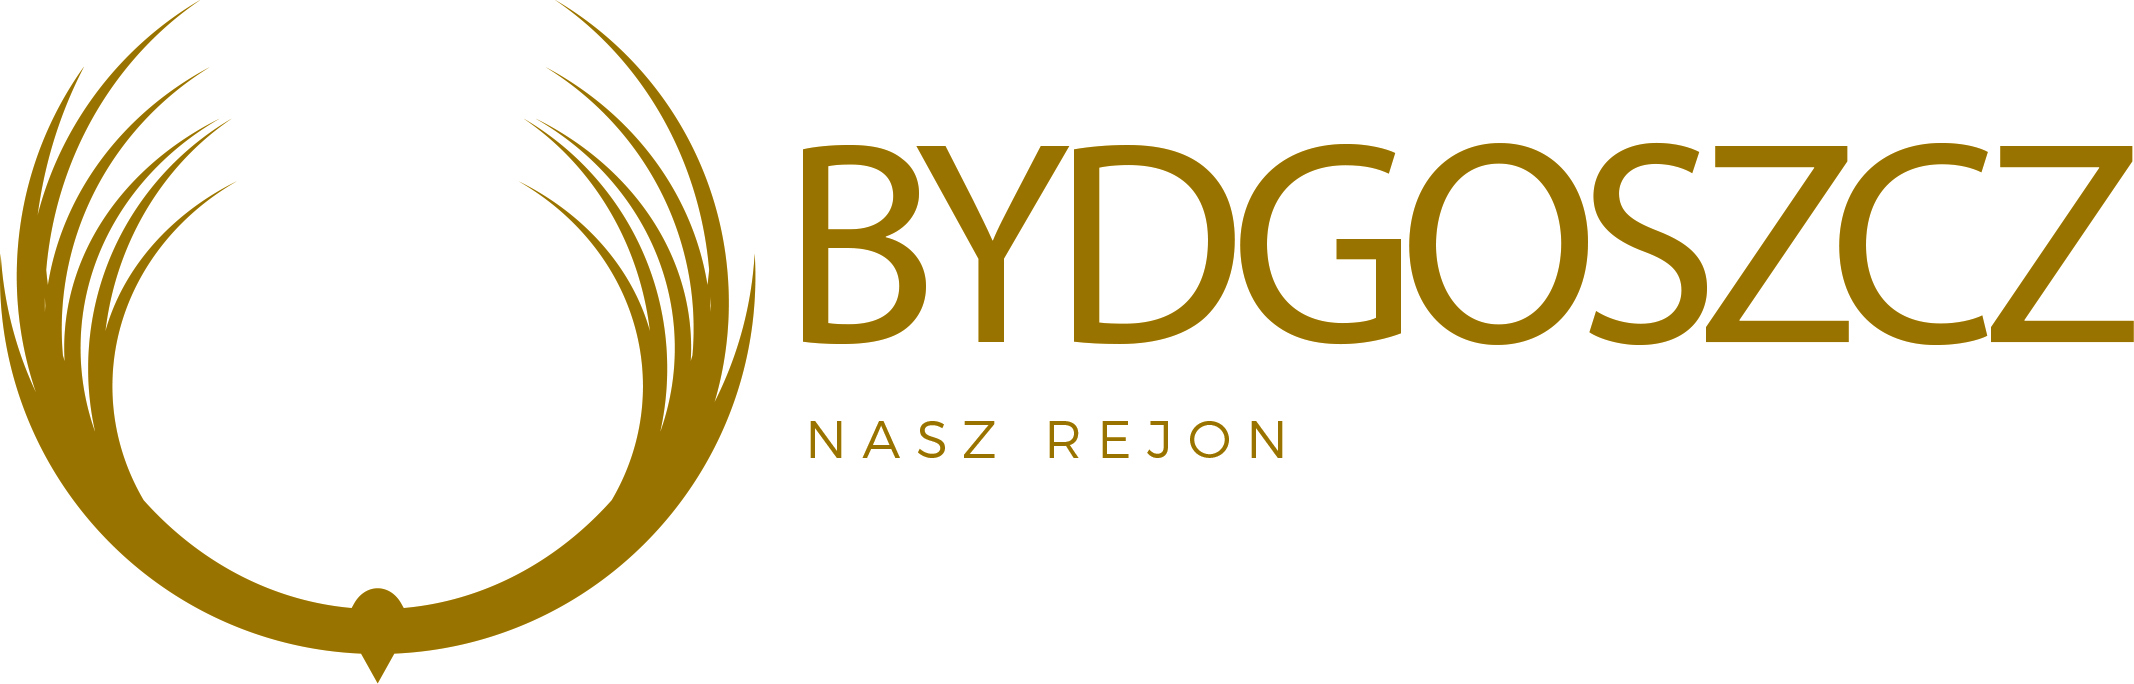 Bydgoszcz-info.eu – Nasz rejon